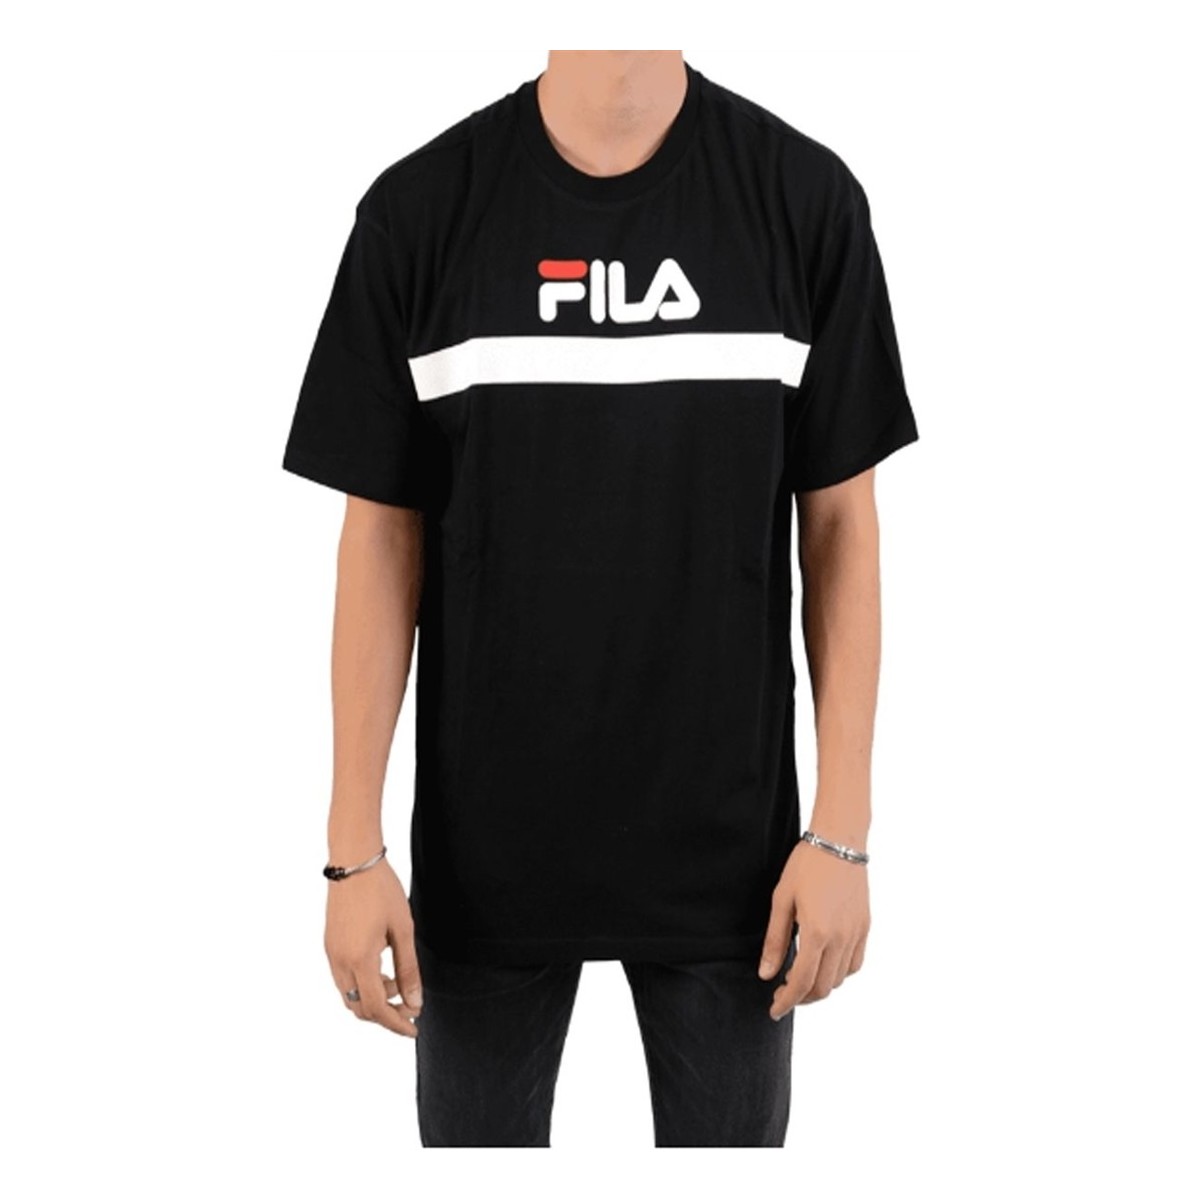 Υφασμάτινα Άνδρας T-shirts & Μπλούζες Fila ANATOLI TEE Black